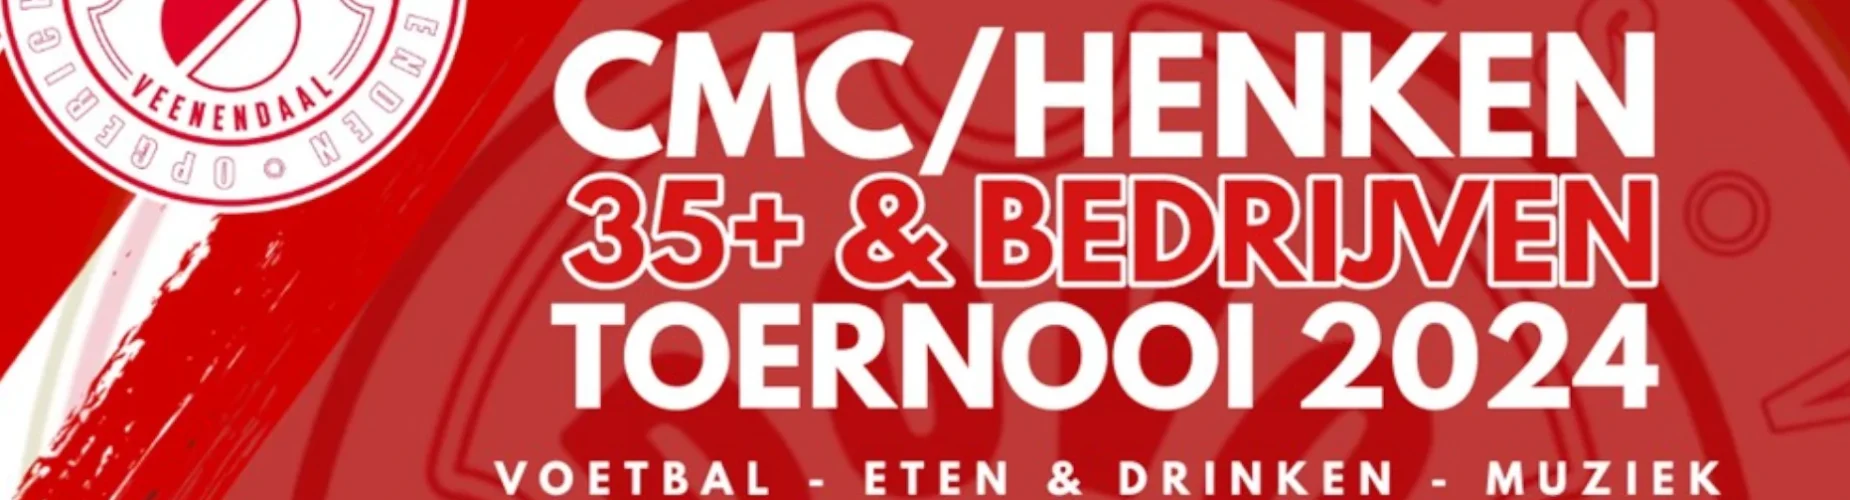 Banner - Bedrijven - 4e editie CMC & Henken Toernooi - vv DOVO - Veenendaal